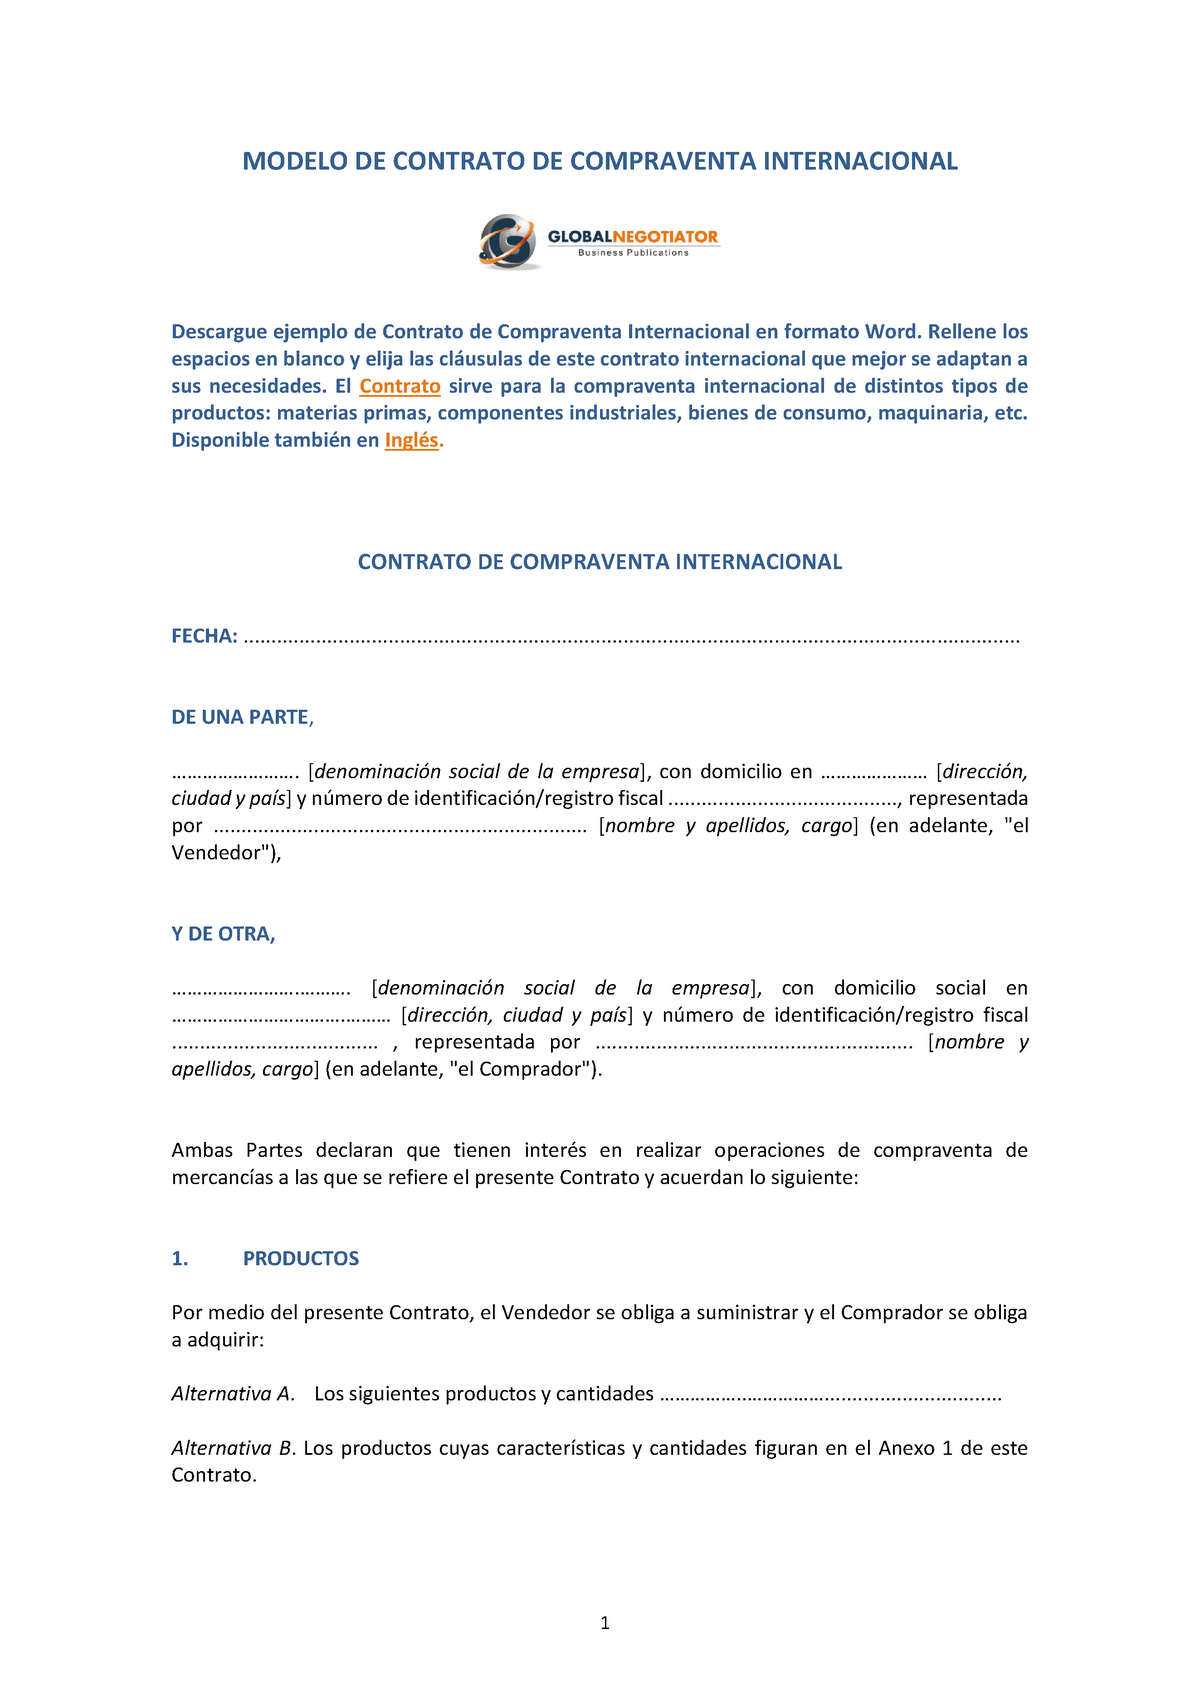 Modelo de contrato de compraventa internacional - MODELO DE CONTRATO DE  COMPRAVENTA INTERNACIONAL - Studocu